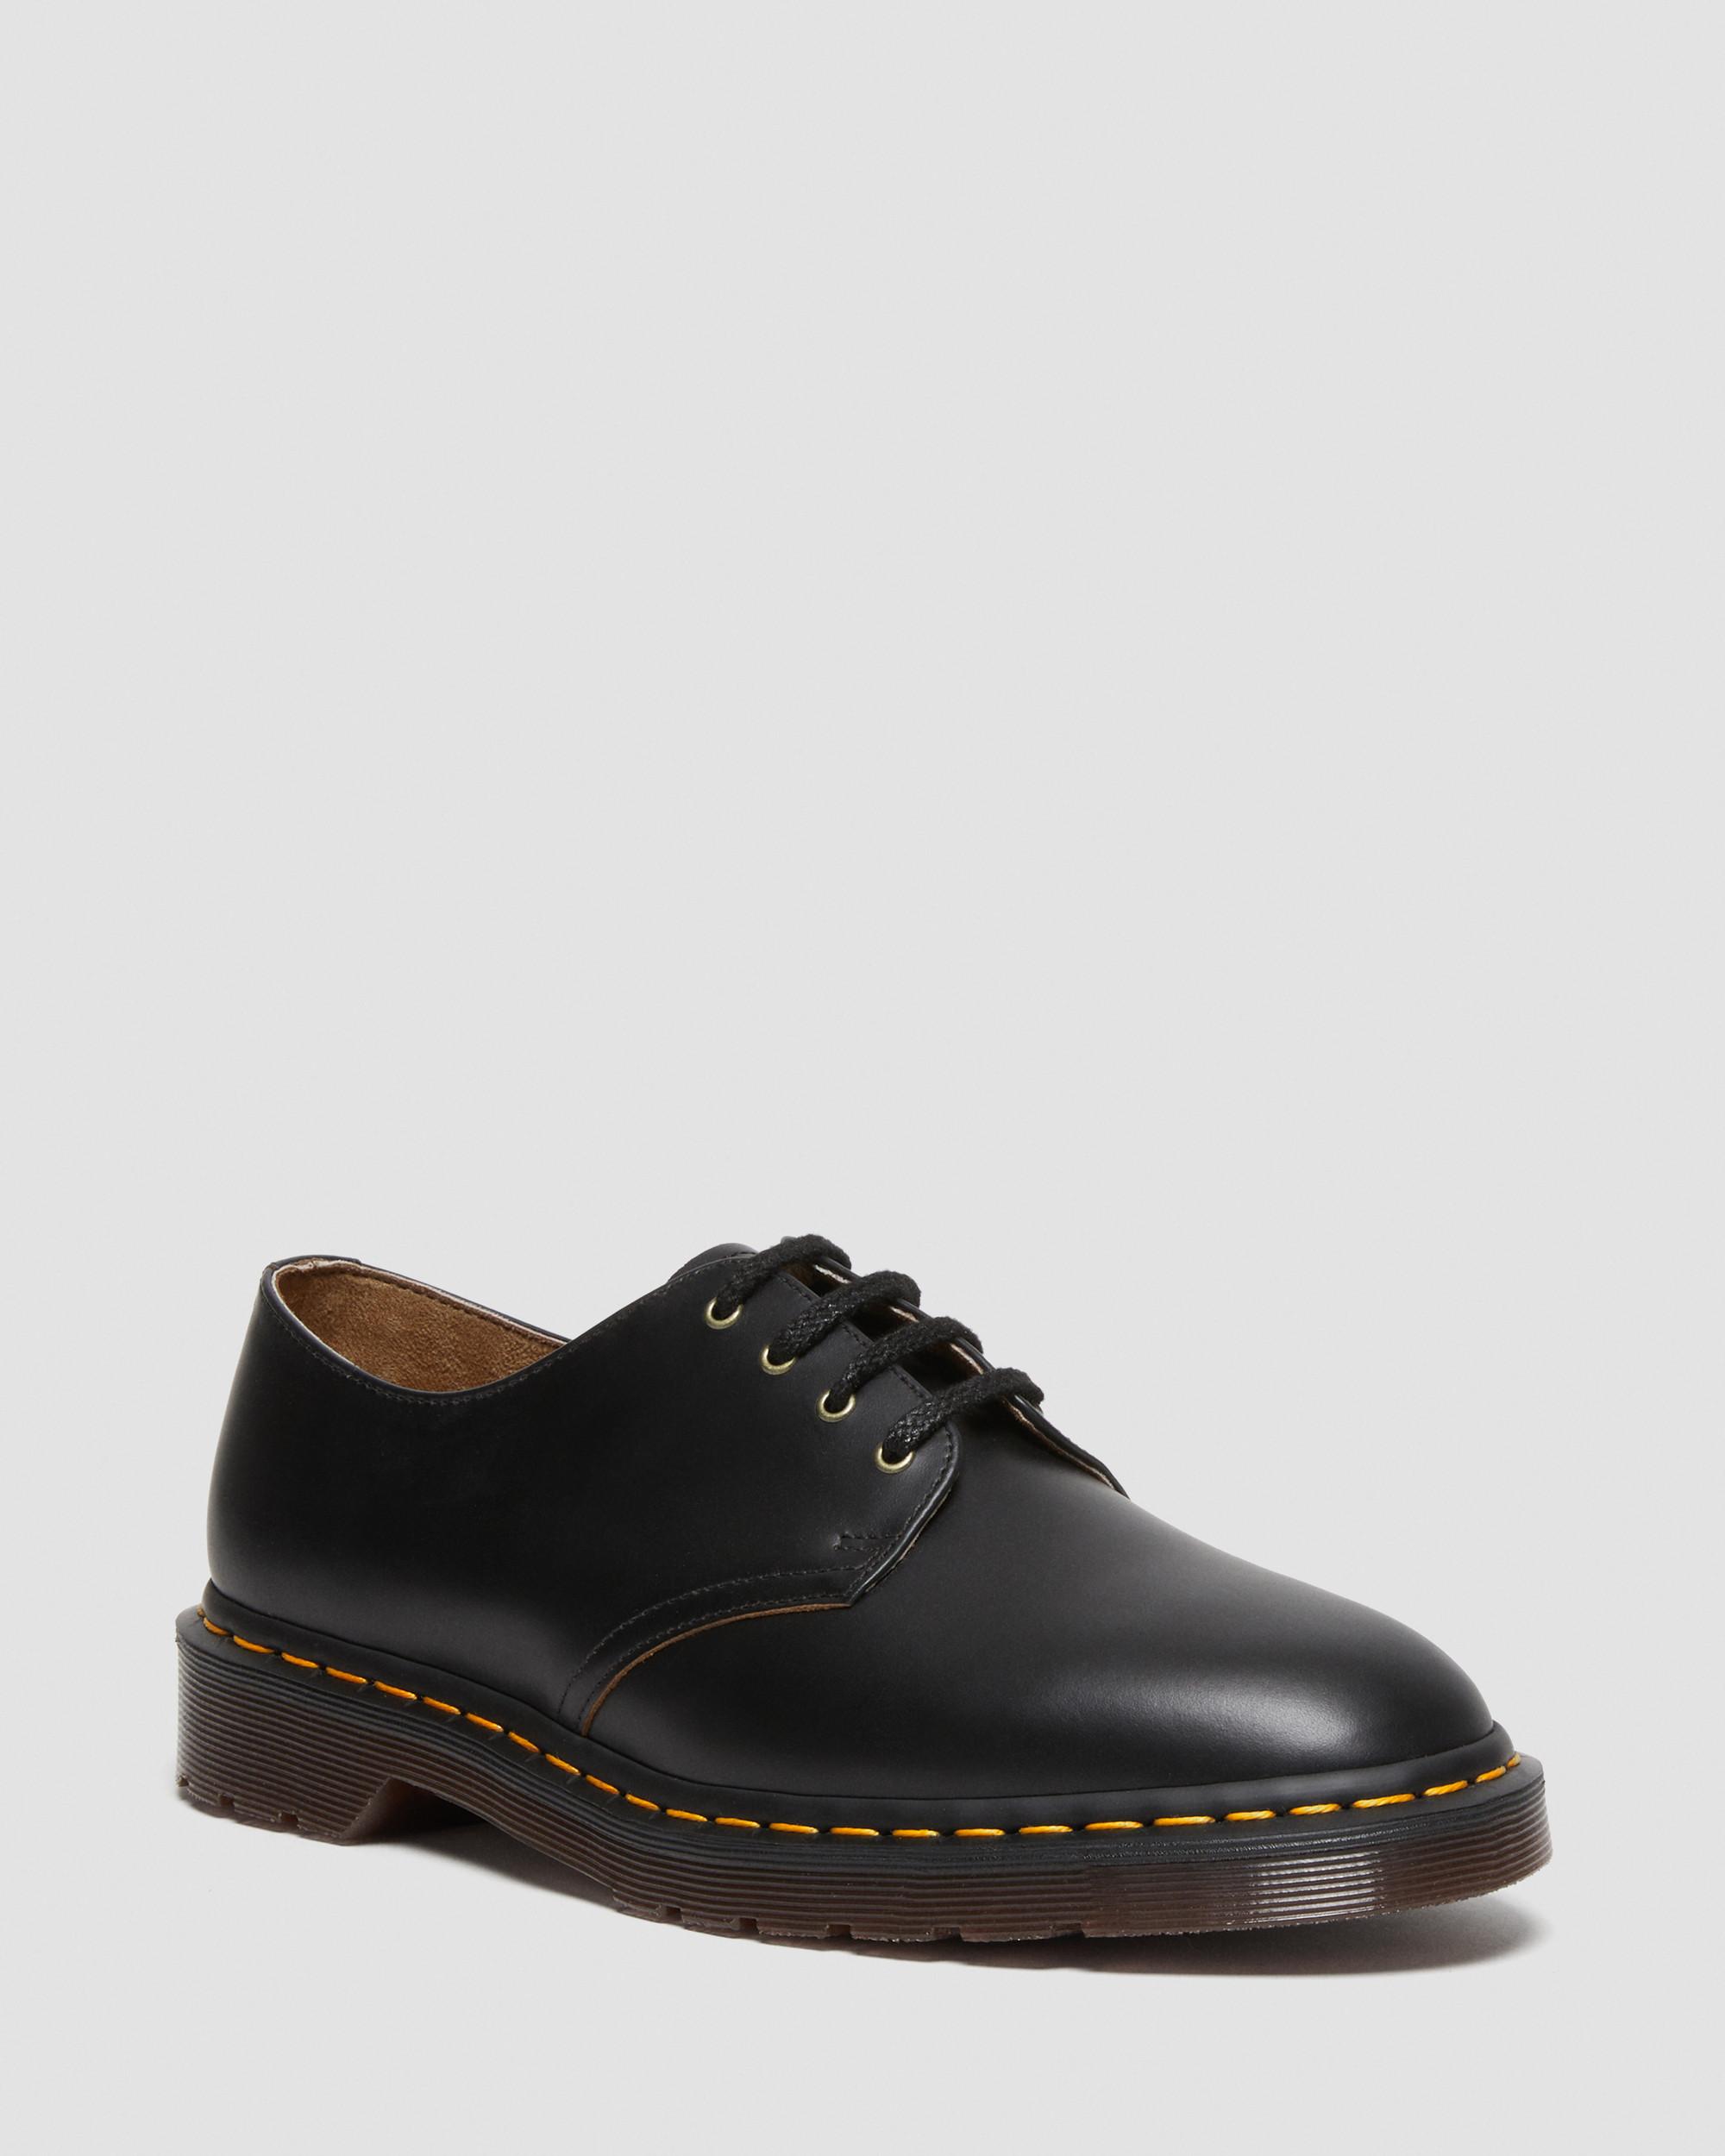 formal shoes for men black